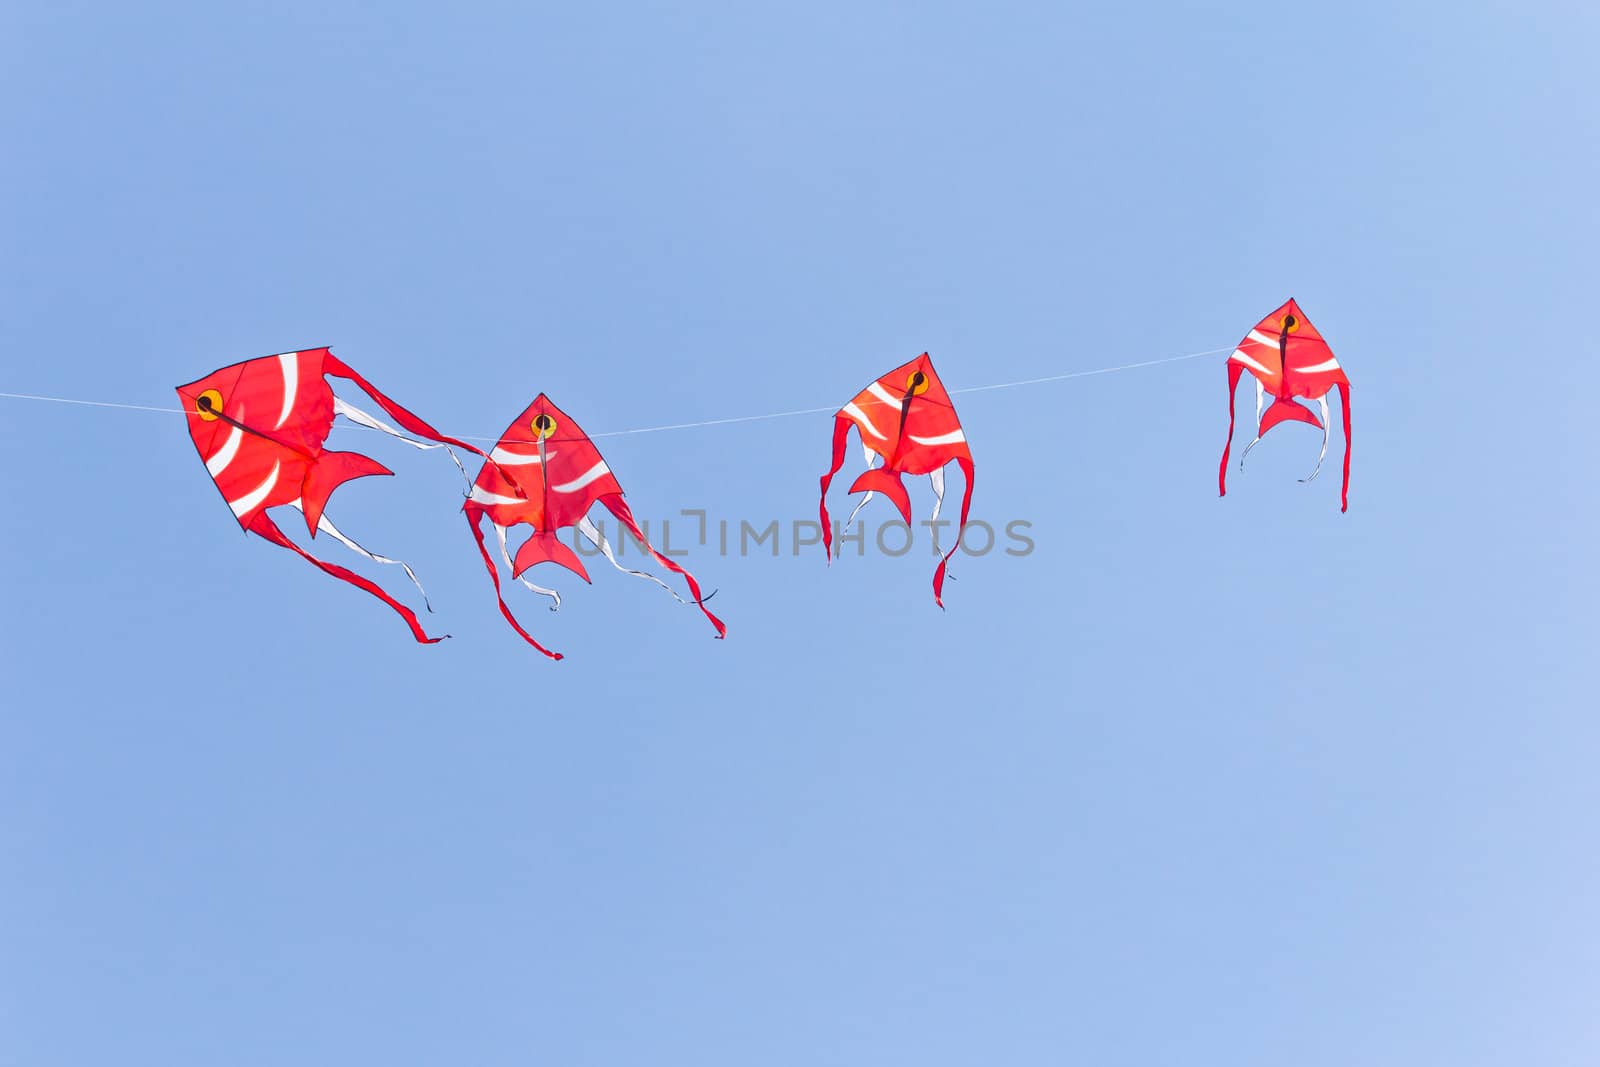 fish kite against blue sky